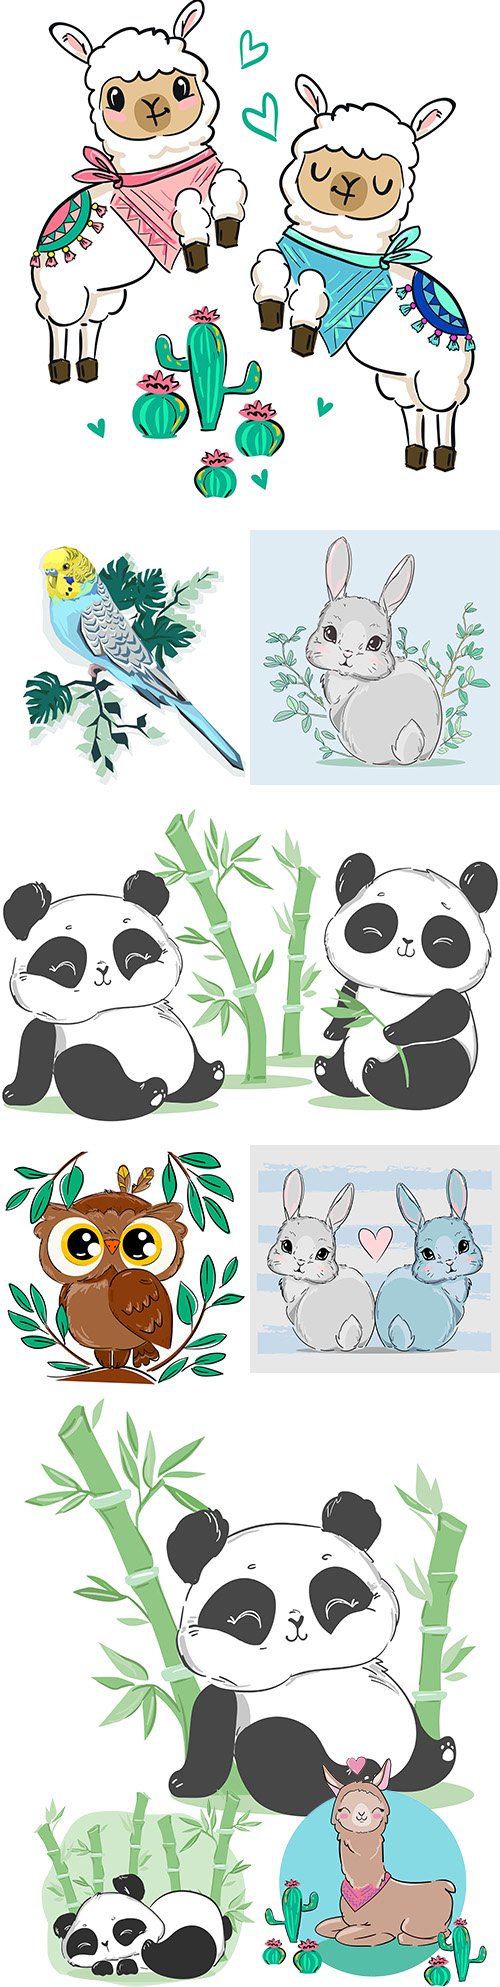 Cute panda, llama and Easter rabbit illustration cartoon